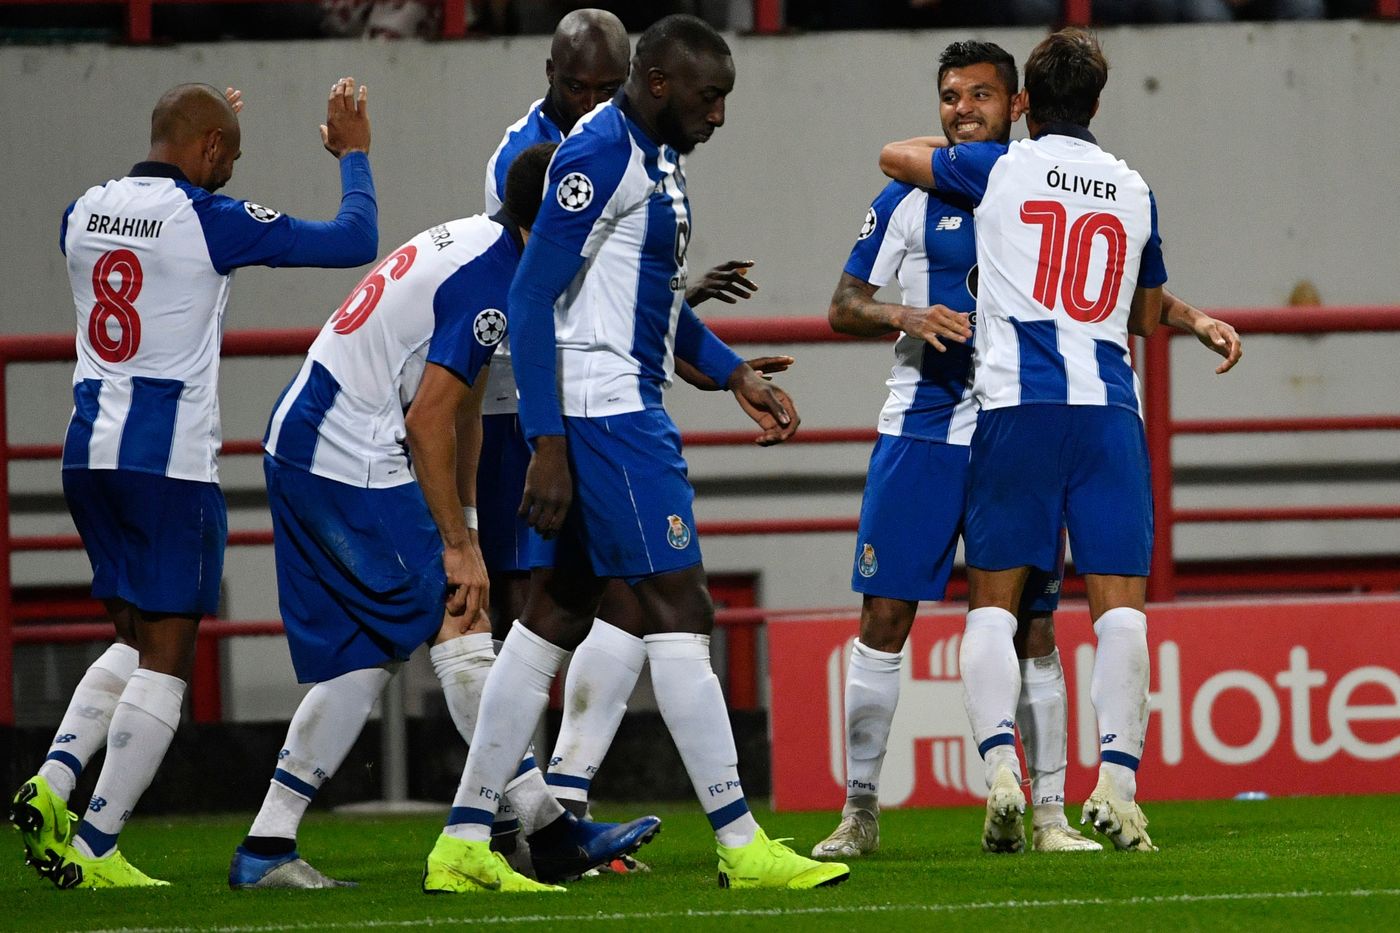 Primeira Liga, Porto-Portimonense venerdì 7 dicembre: analisi e pronostico dell'anticipo della 12ma giornata del torneo lusitano